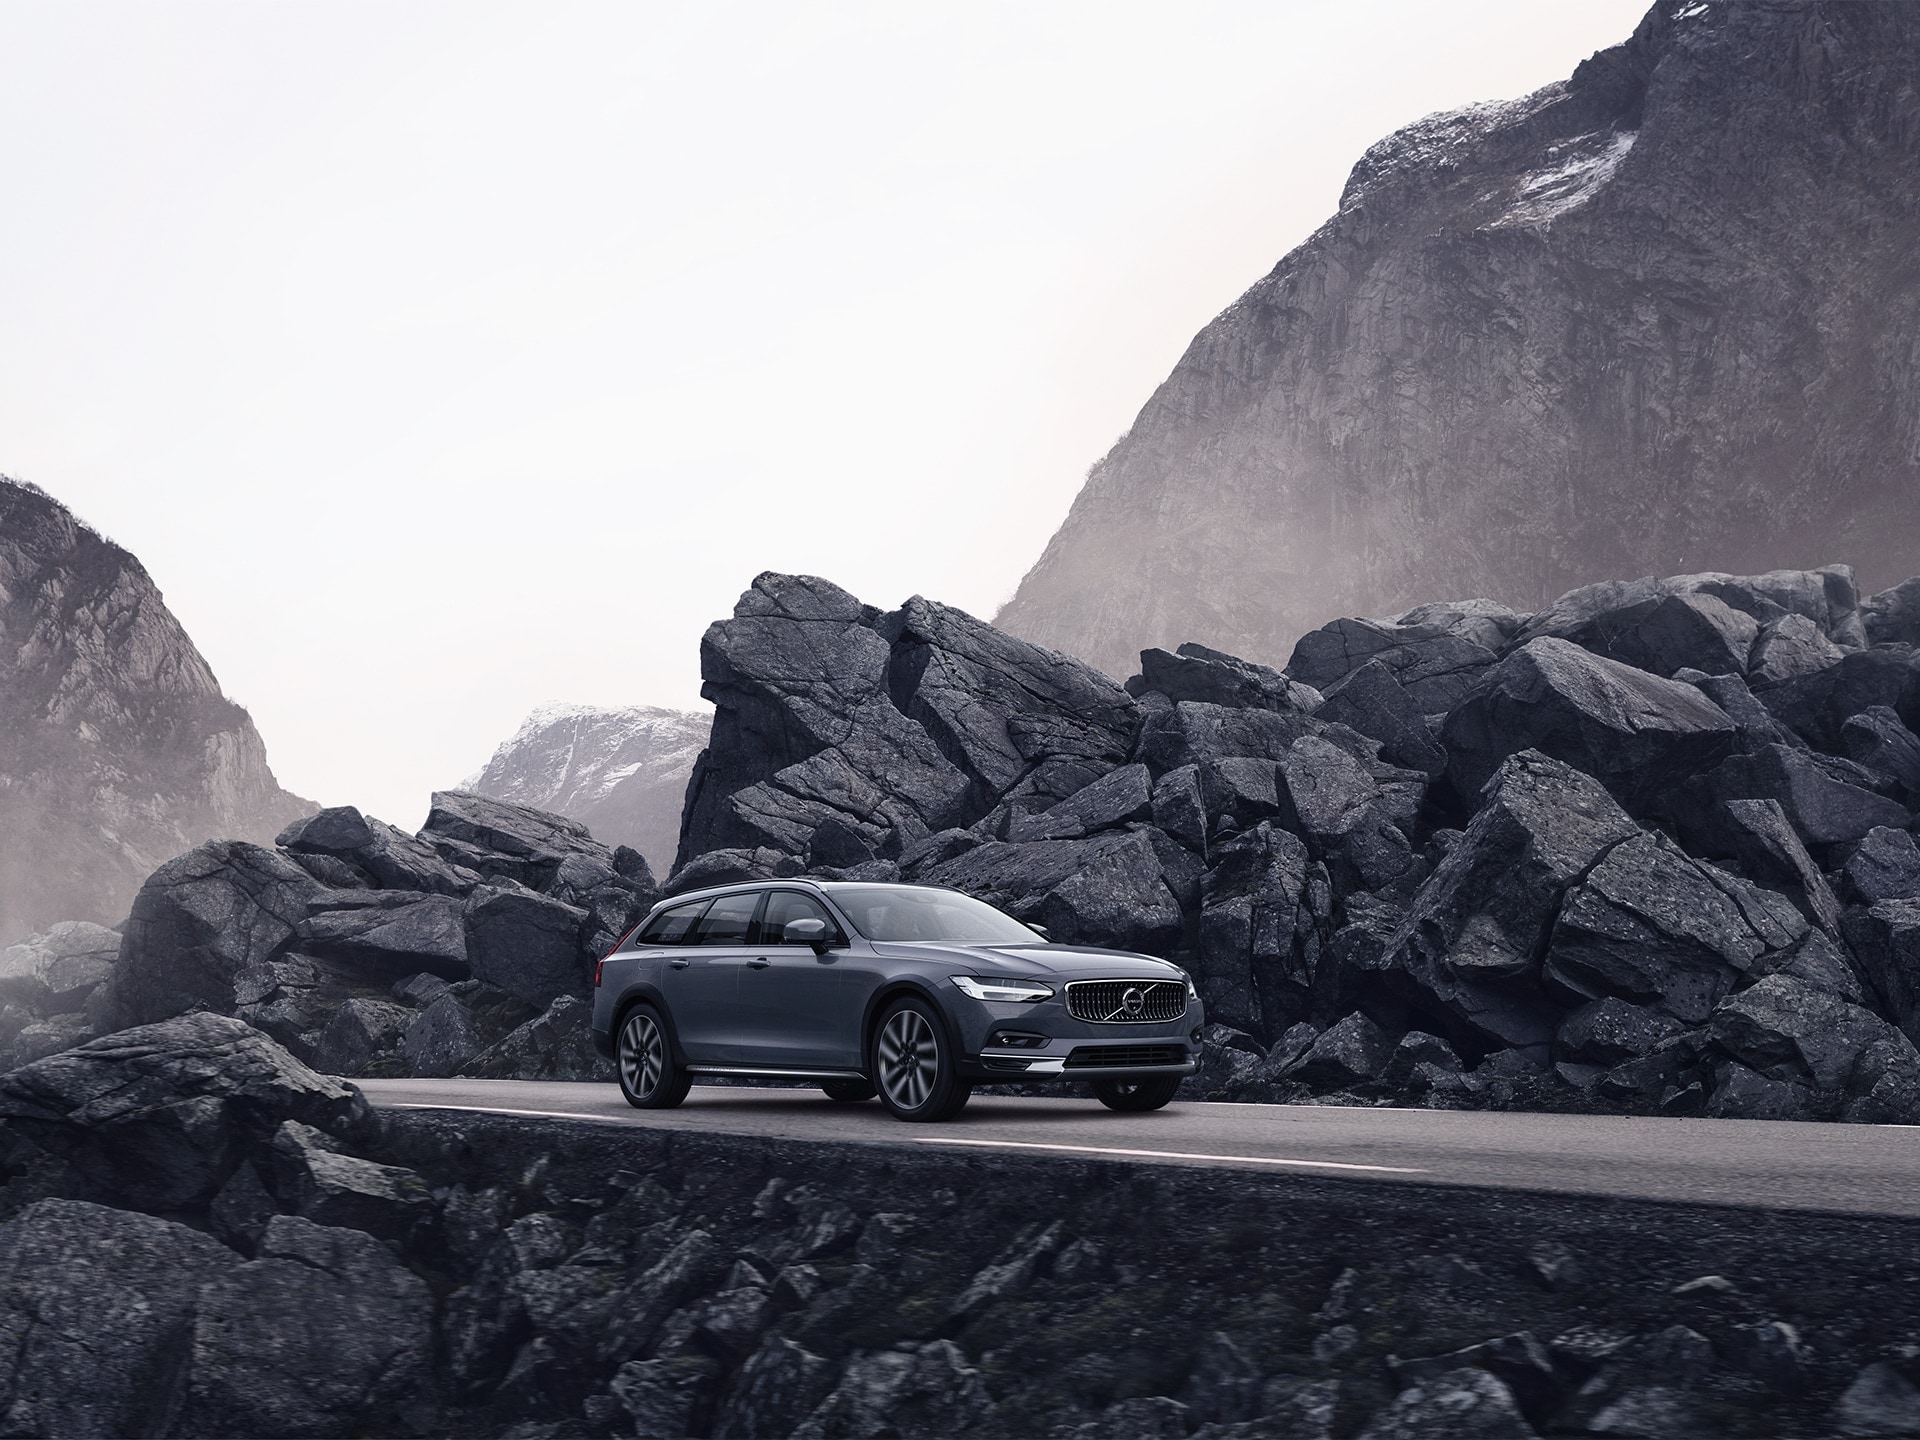 Сиво Volvo пътува по път със скали отстрани.